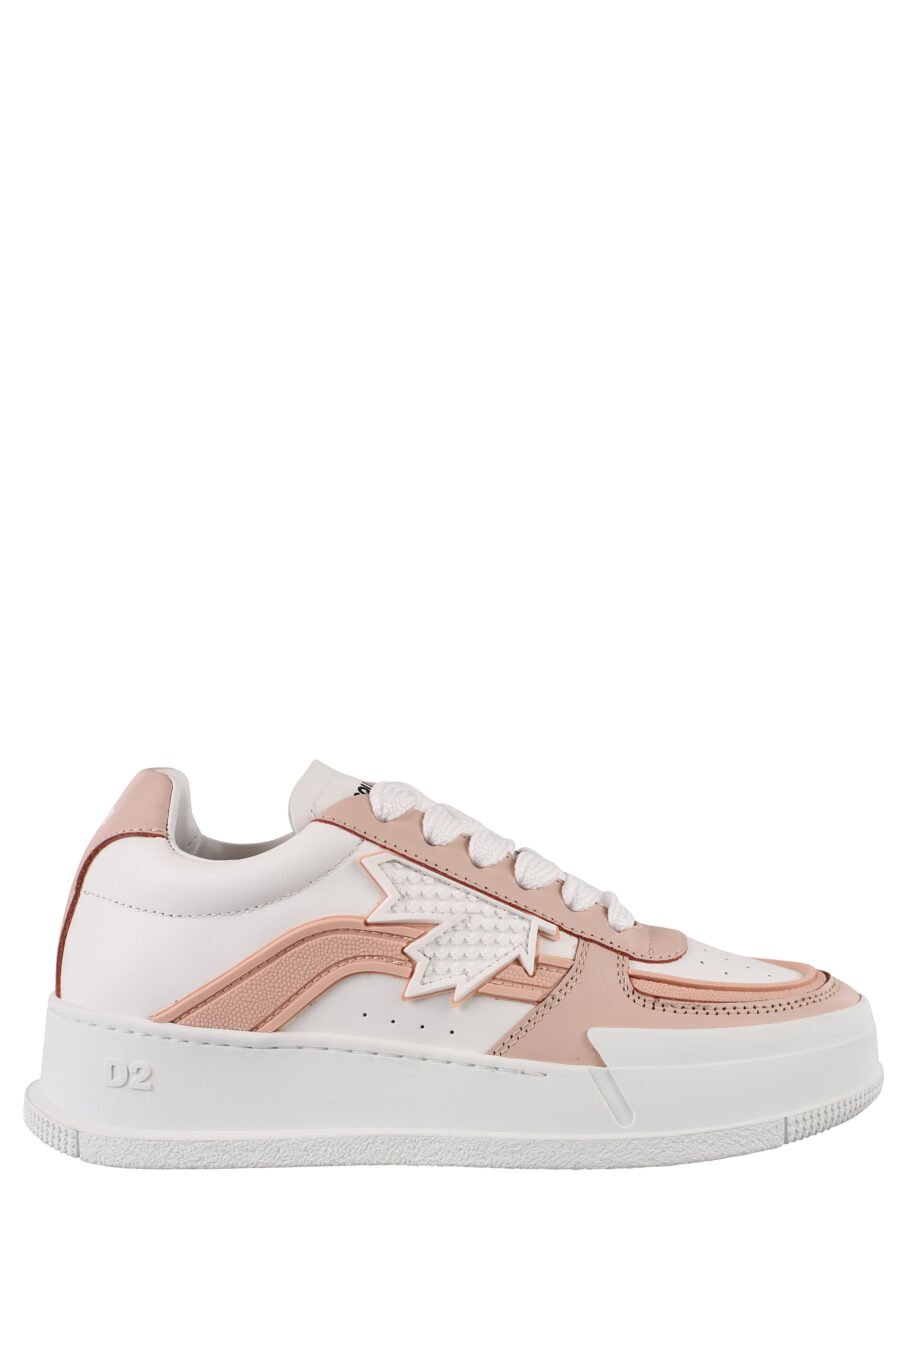 Zapatillas blancas de plataforma con detalle rosa - IMG 1174